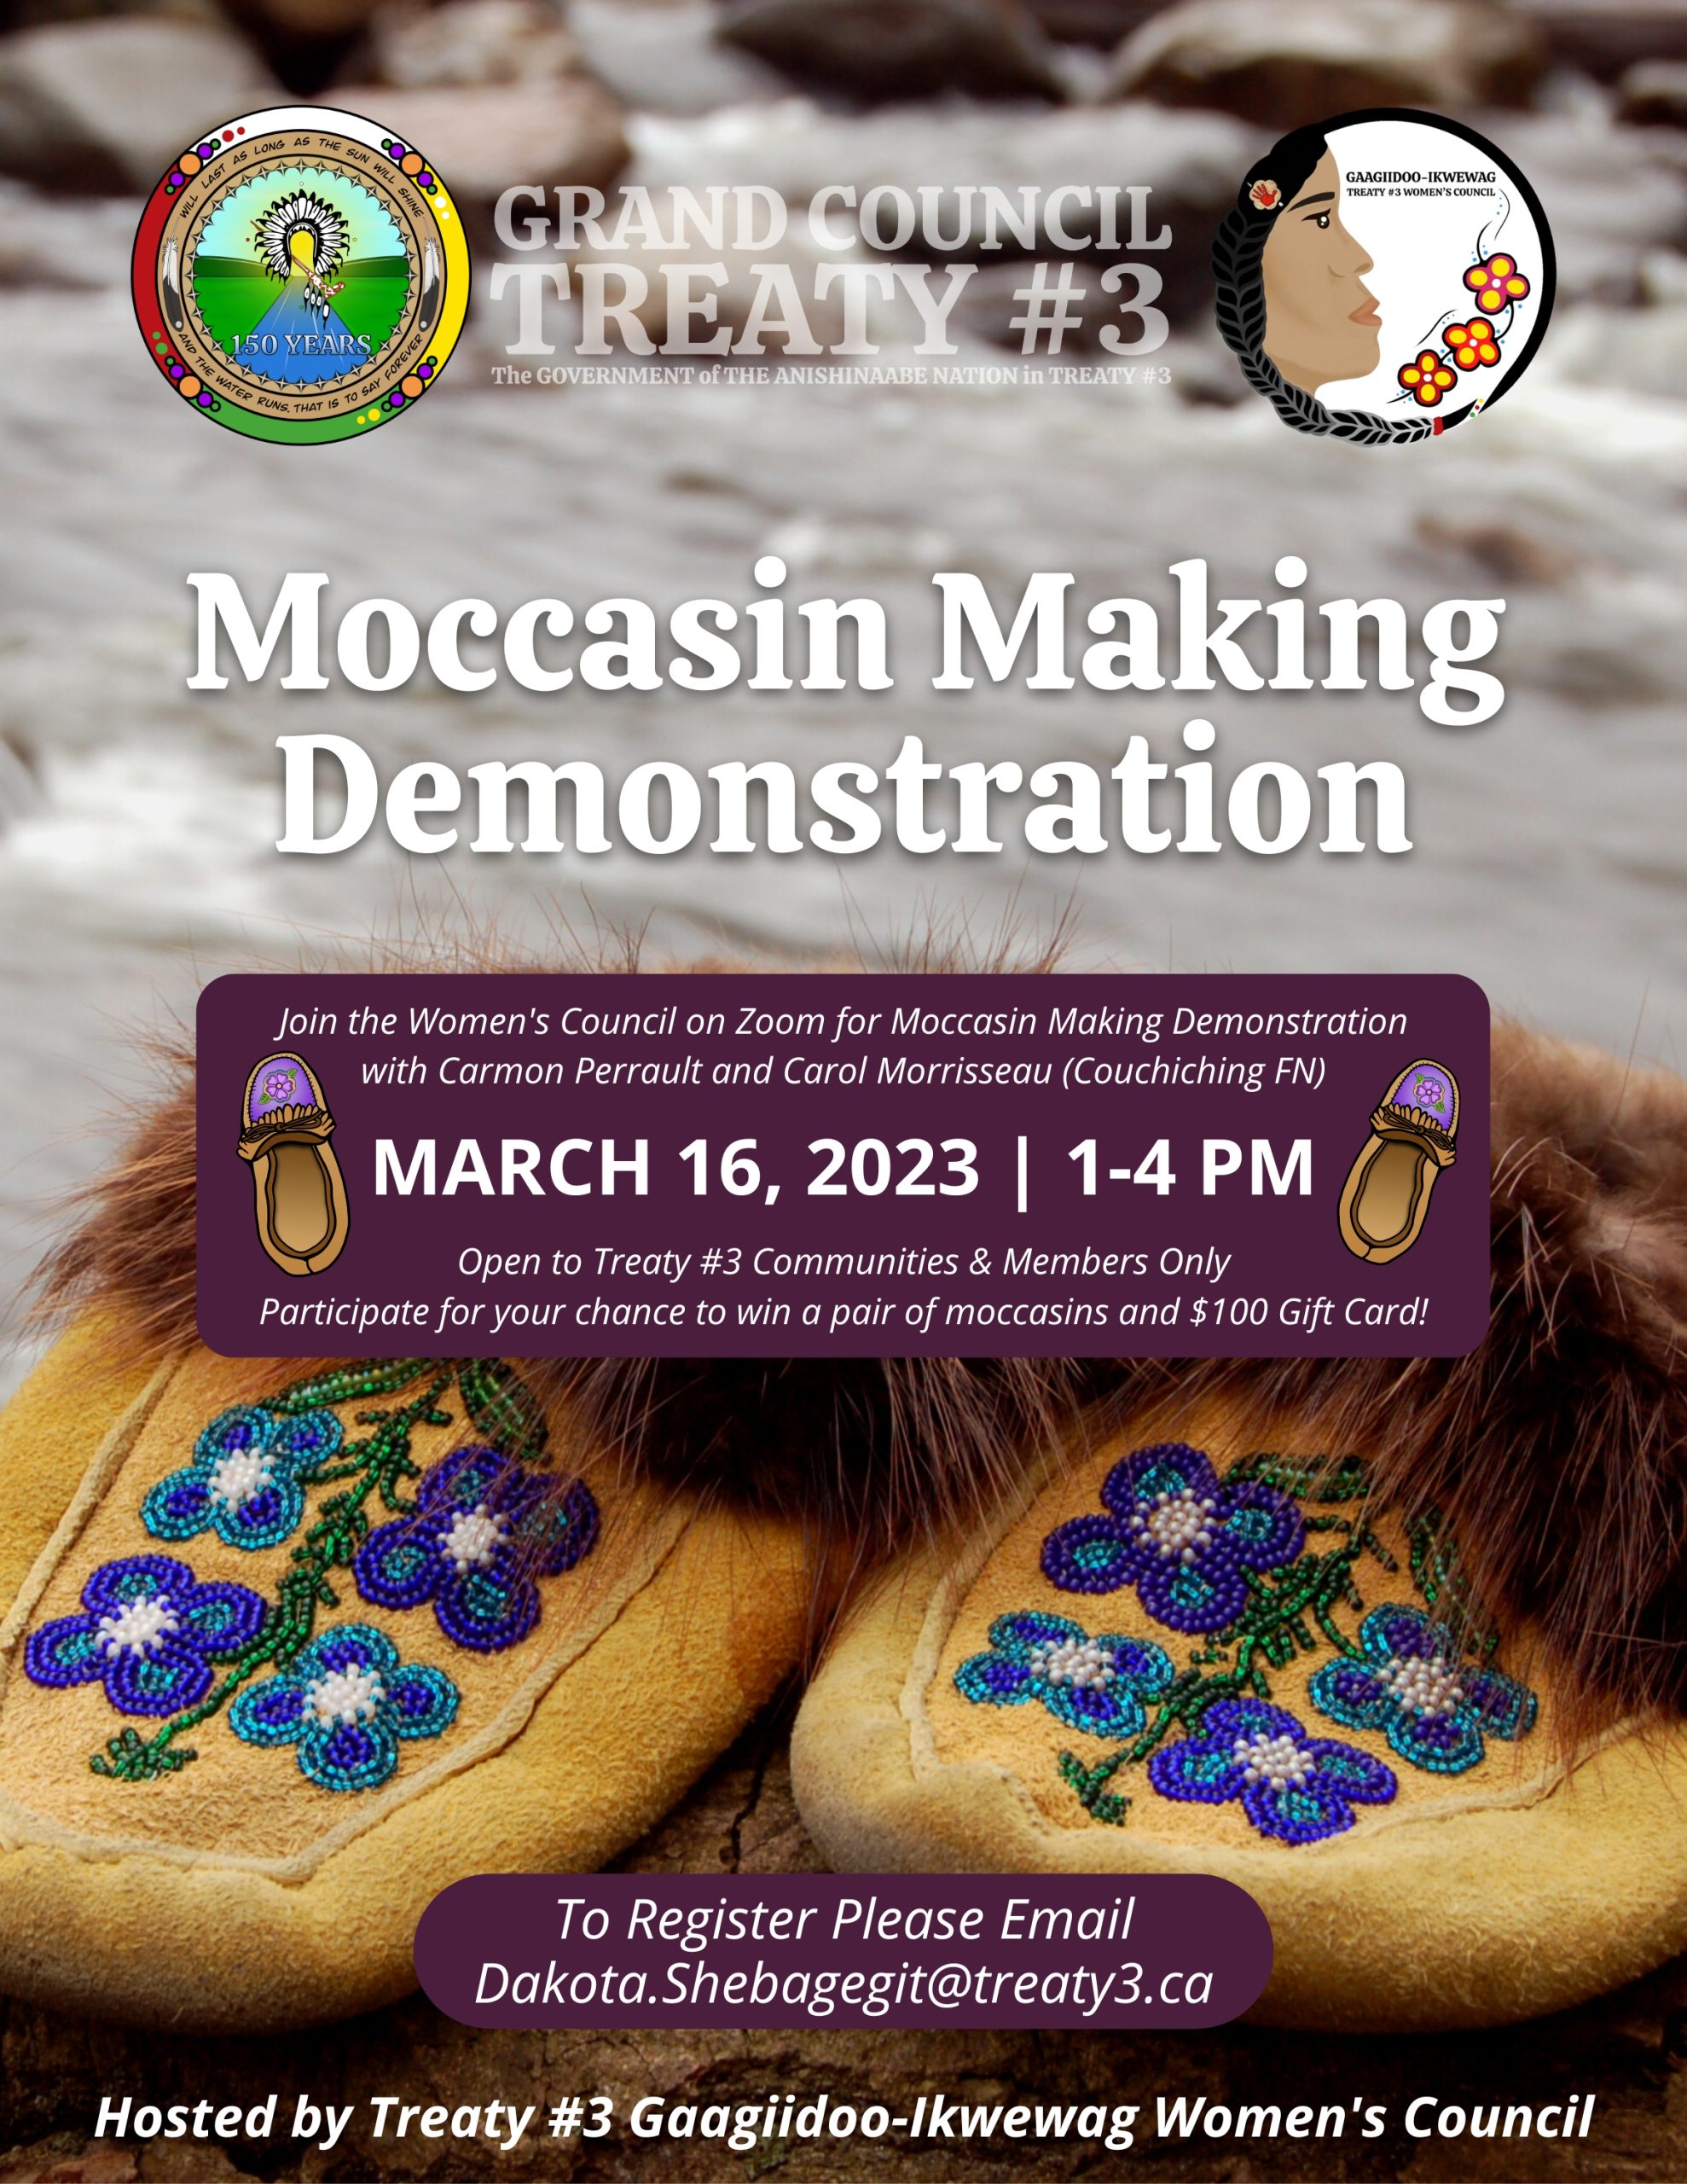 Moccasin Making Demonstration